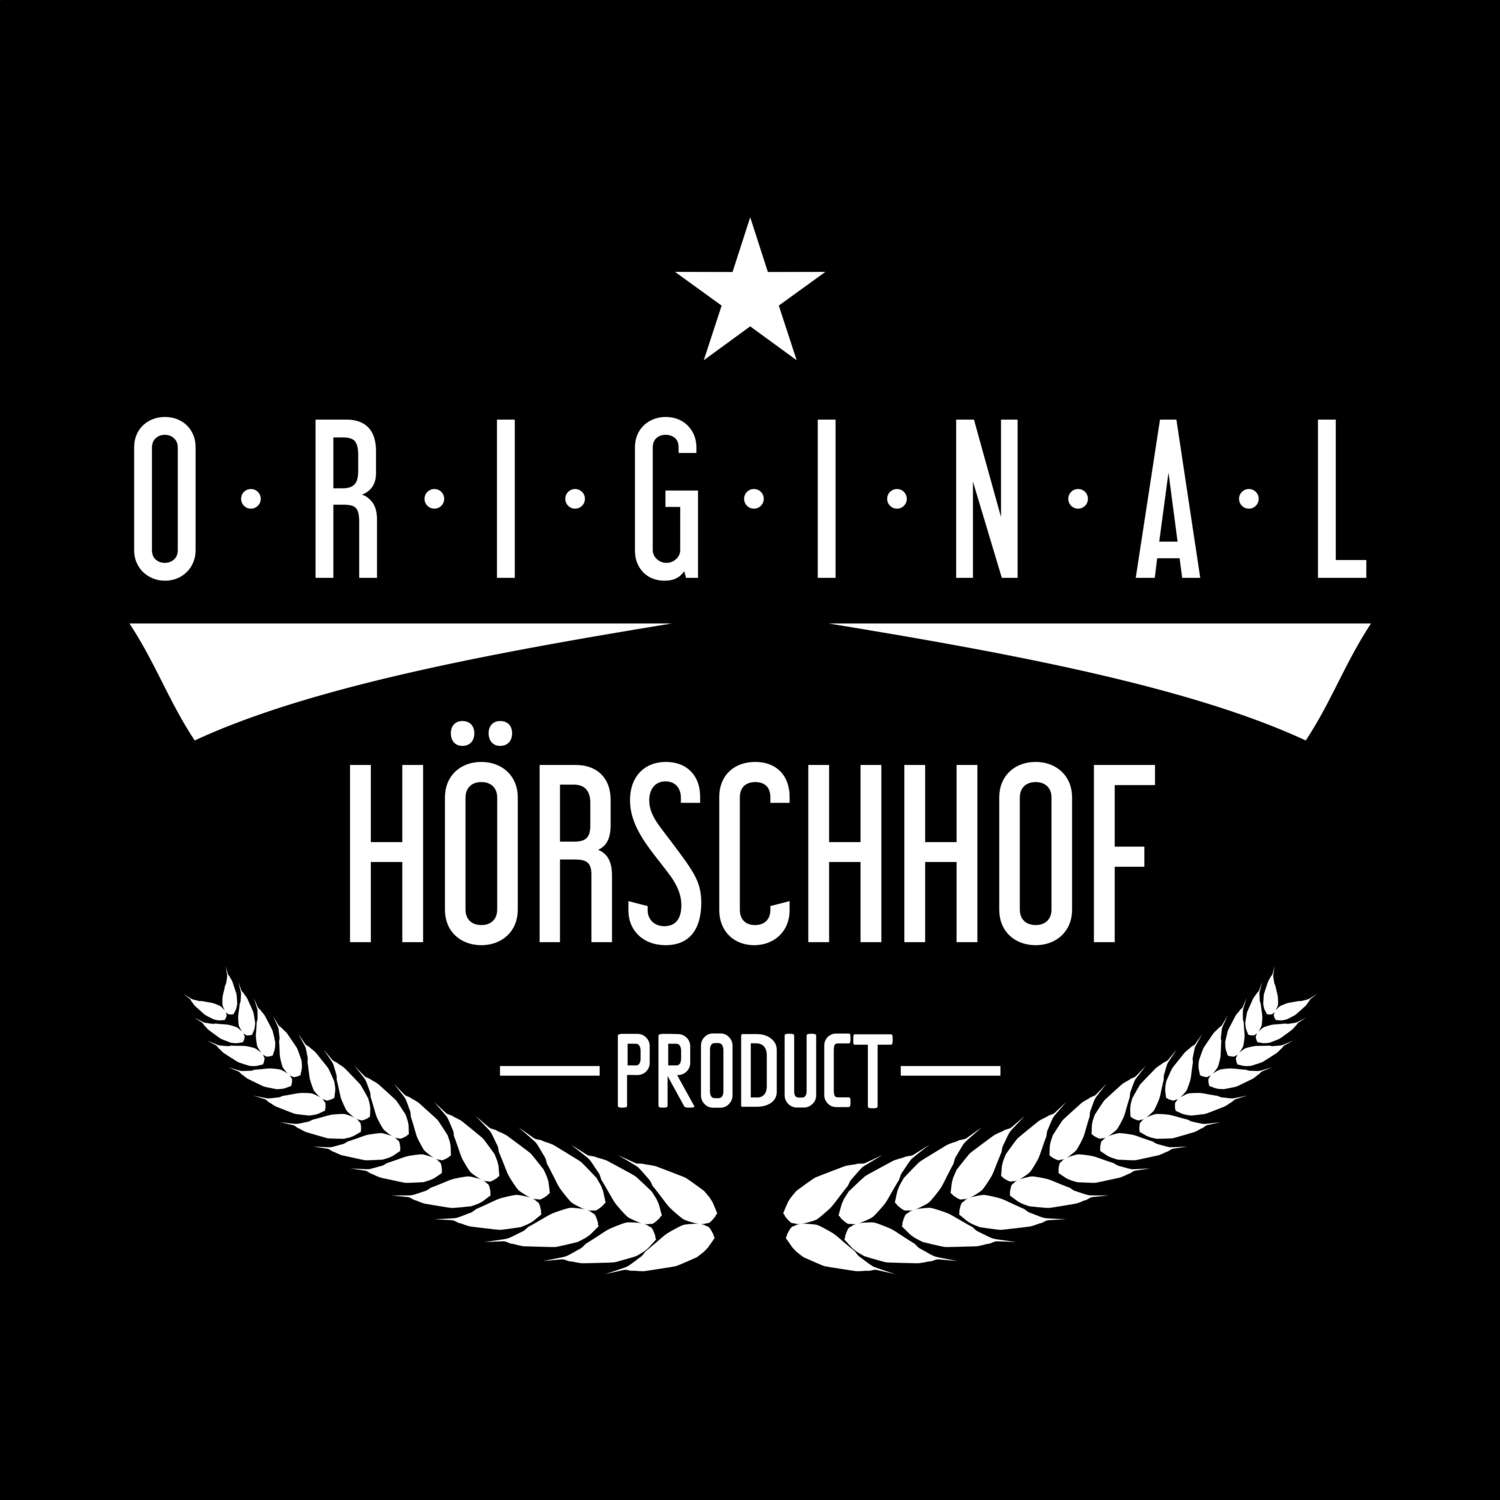 Hörschhof T-Shirt »Original Product«